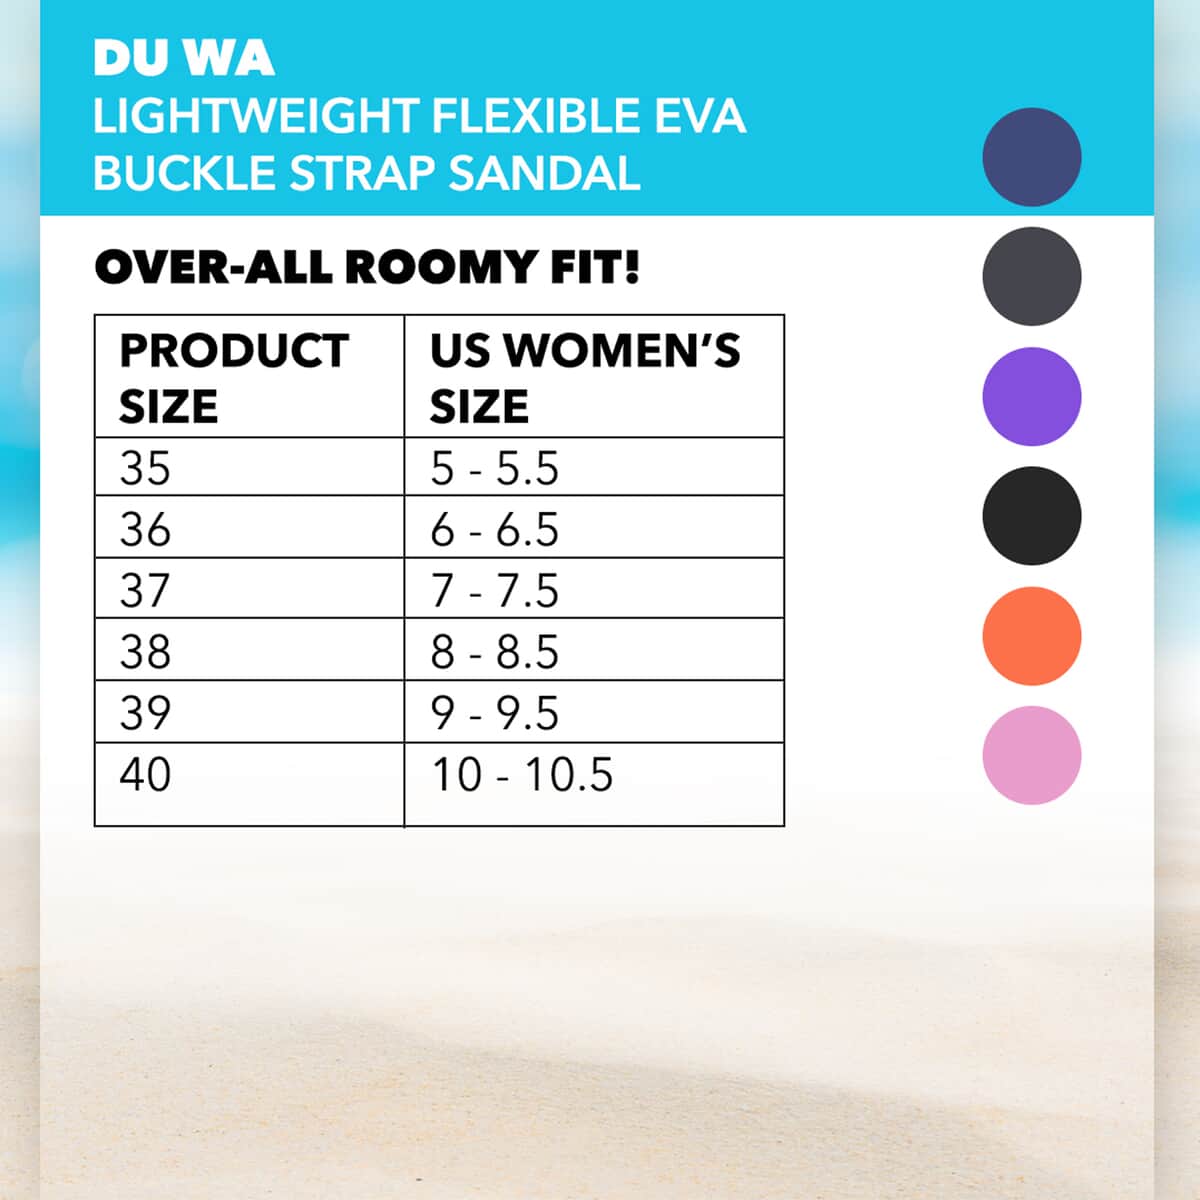 DU WA Pink Ultra Lightweight Flexible EVA Buckle Strap Sandal - Size 9-9.5 image number 1